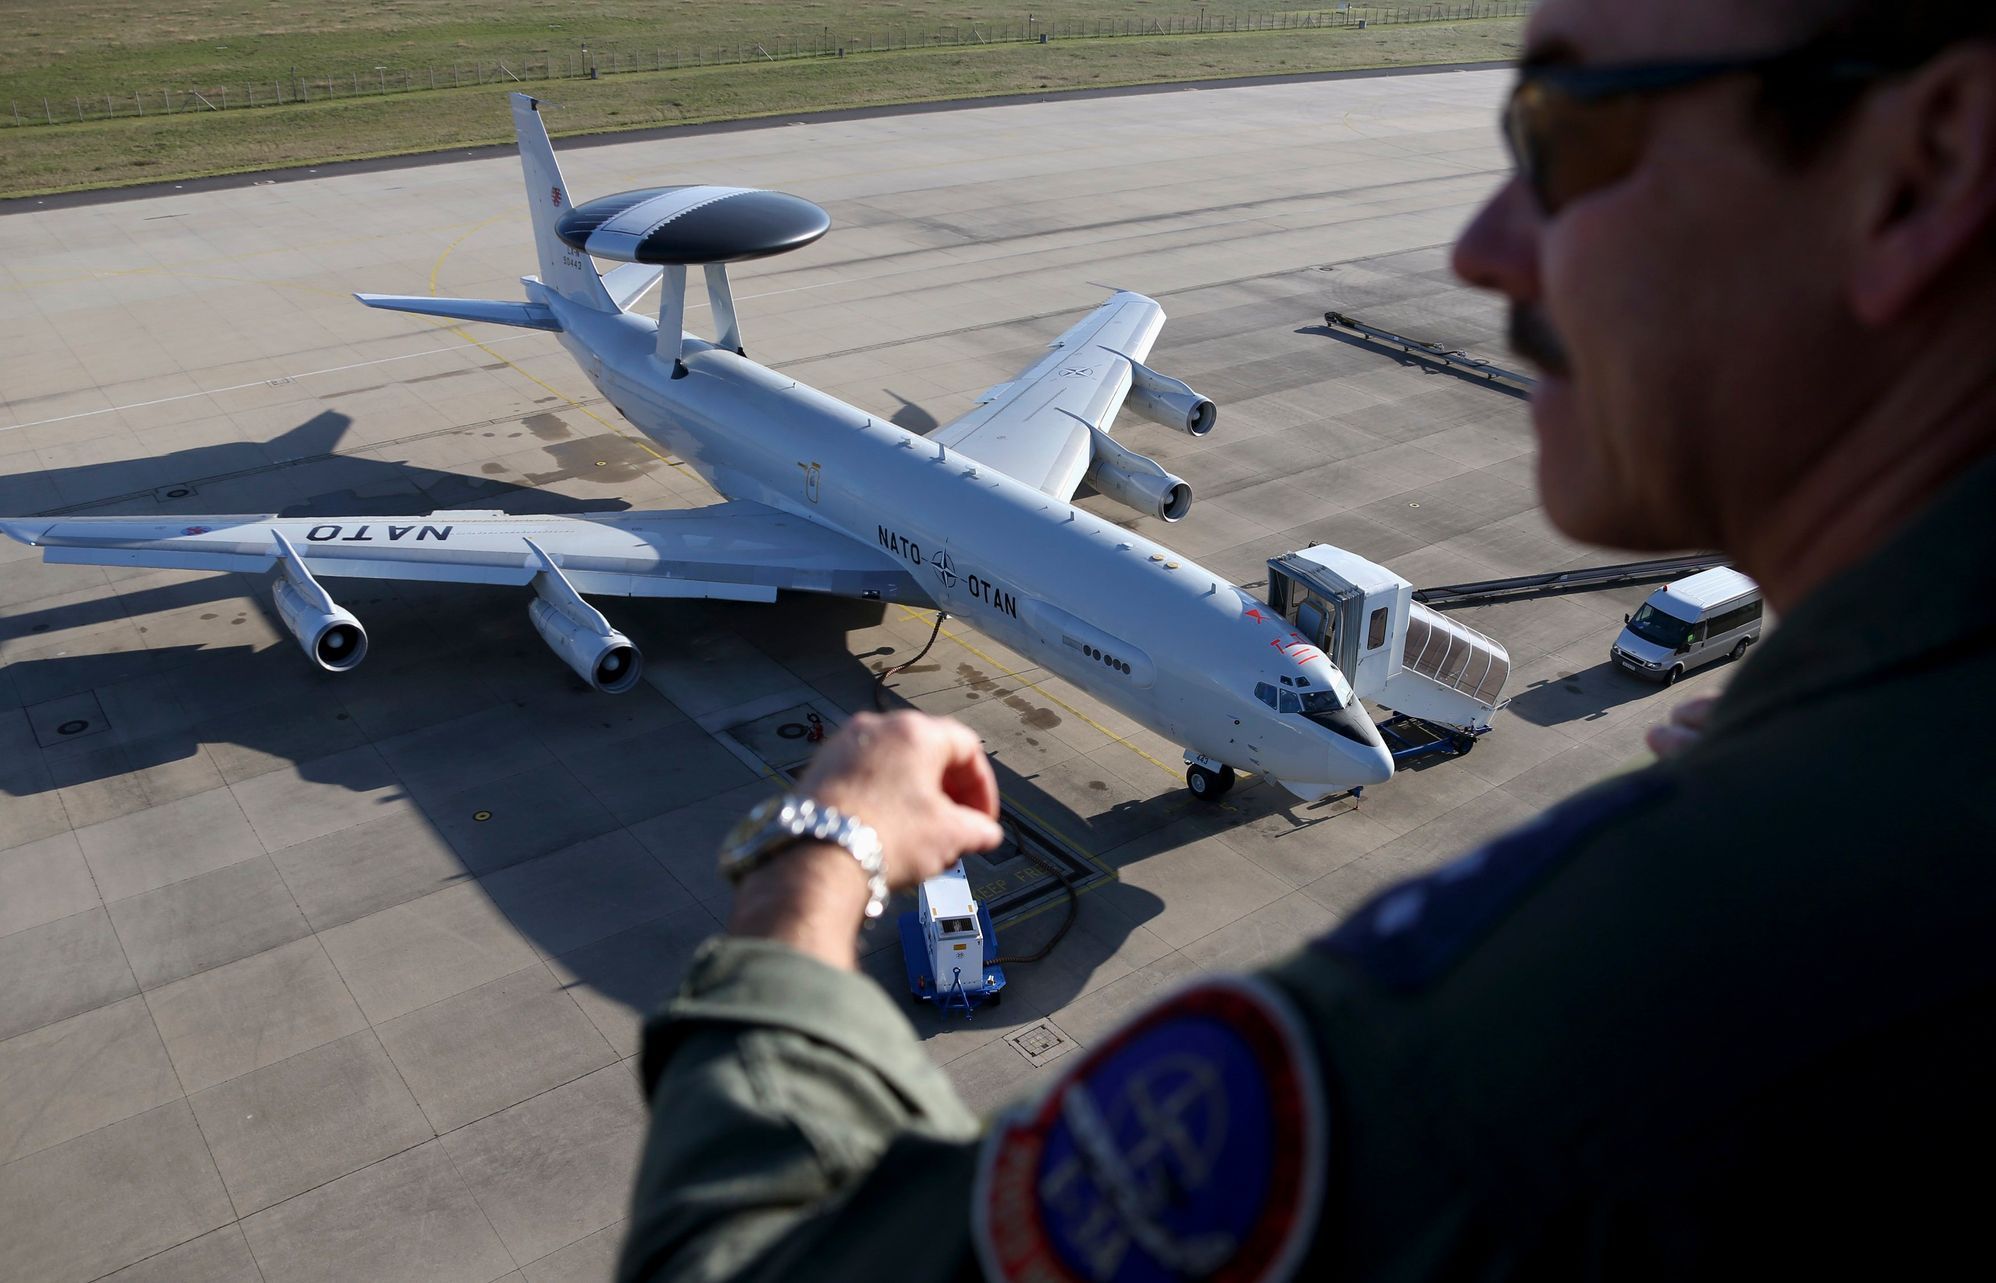 NATO officer watches a AWACS aircraft at AWACS air base in Geilenkirchen near the German-Dutch border